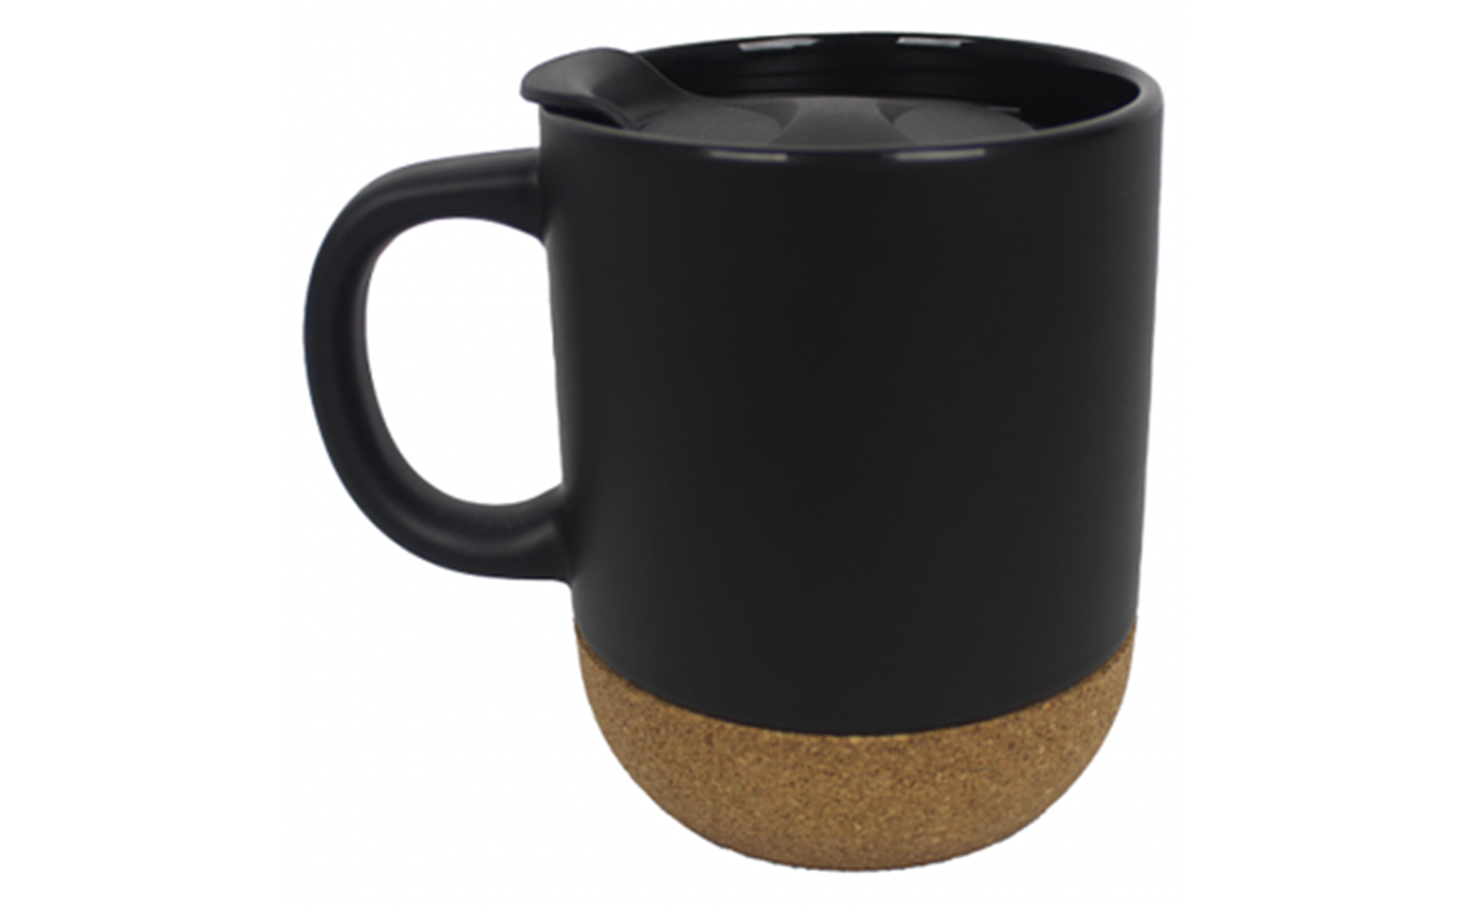 Ceramic mug with cork